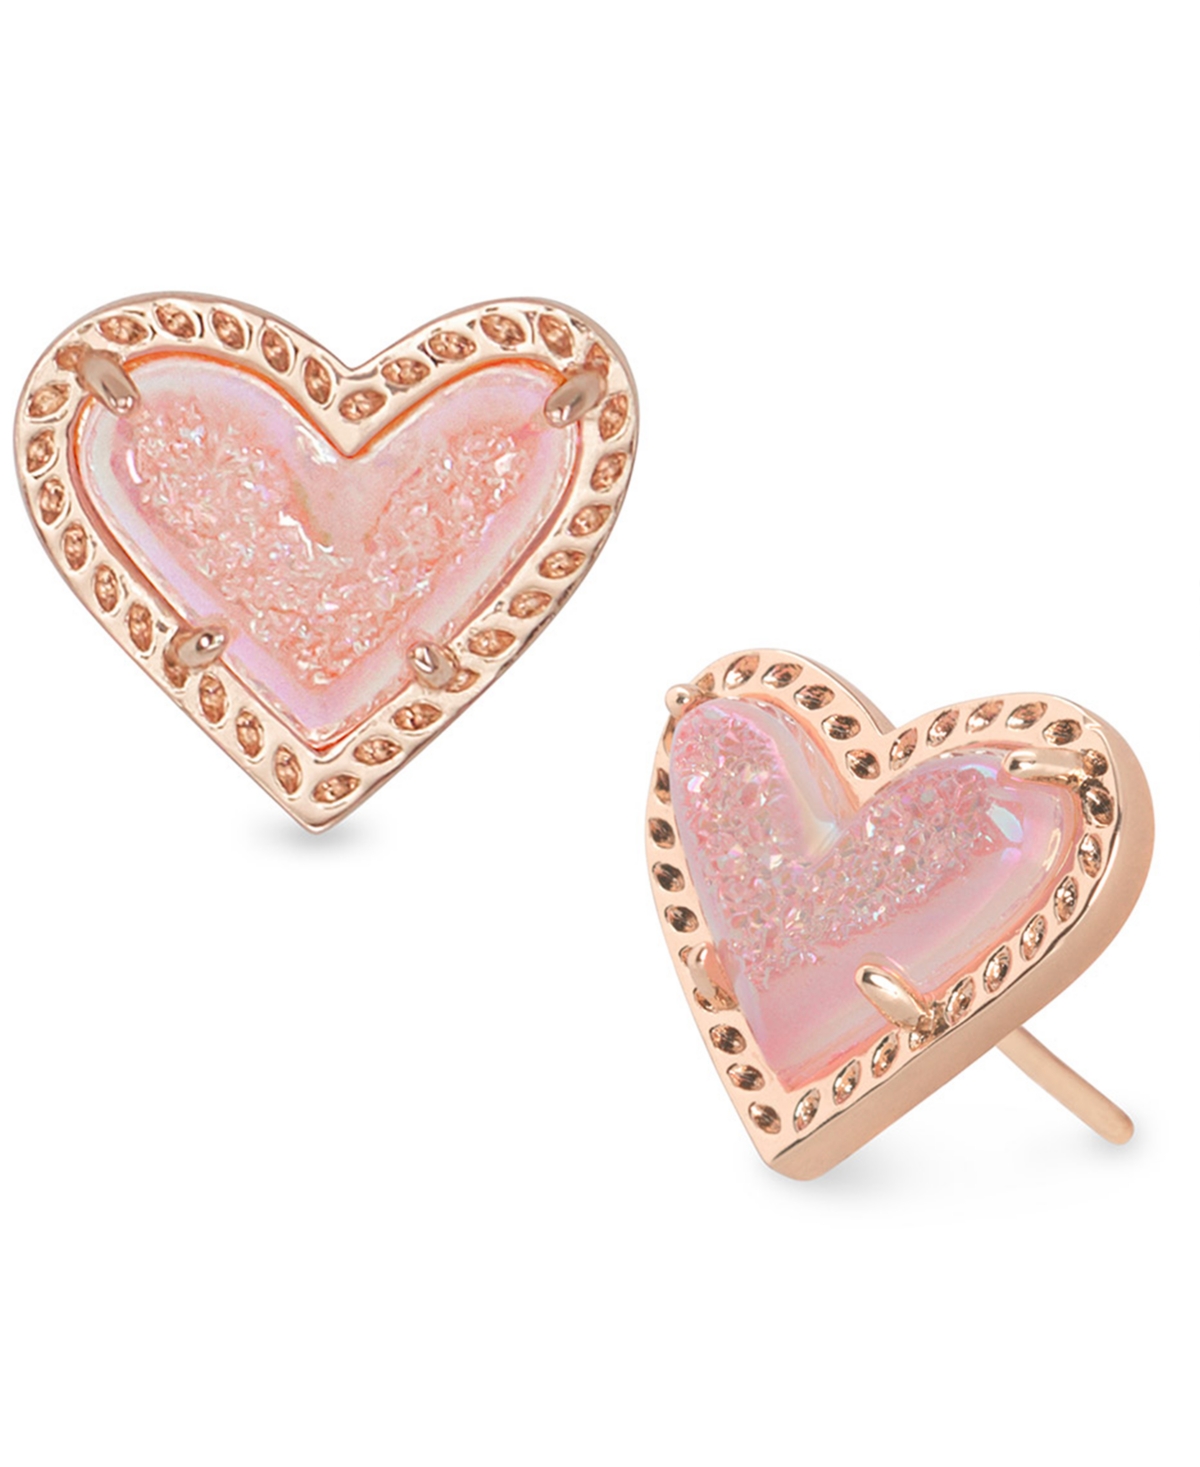 Kendra Scott Stone Heart Stud Earrings In Pink Drusy